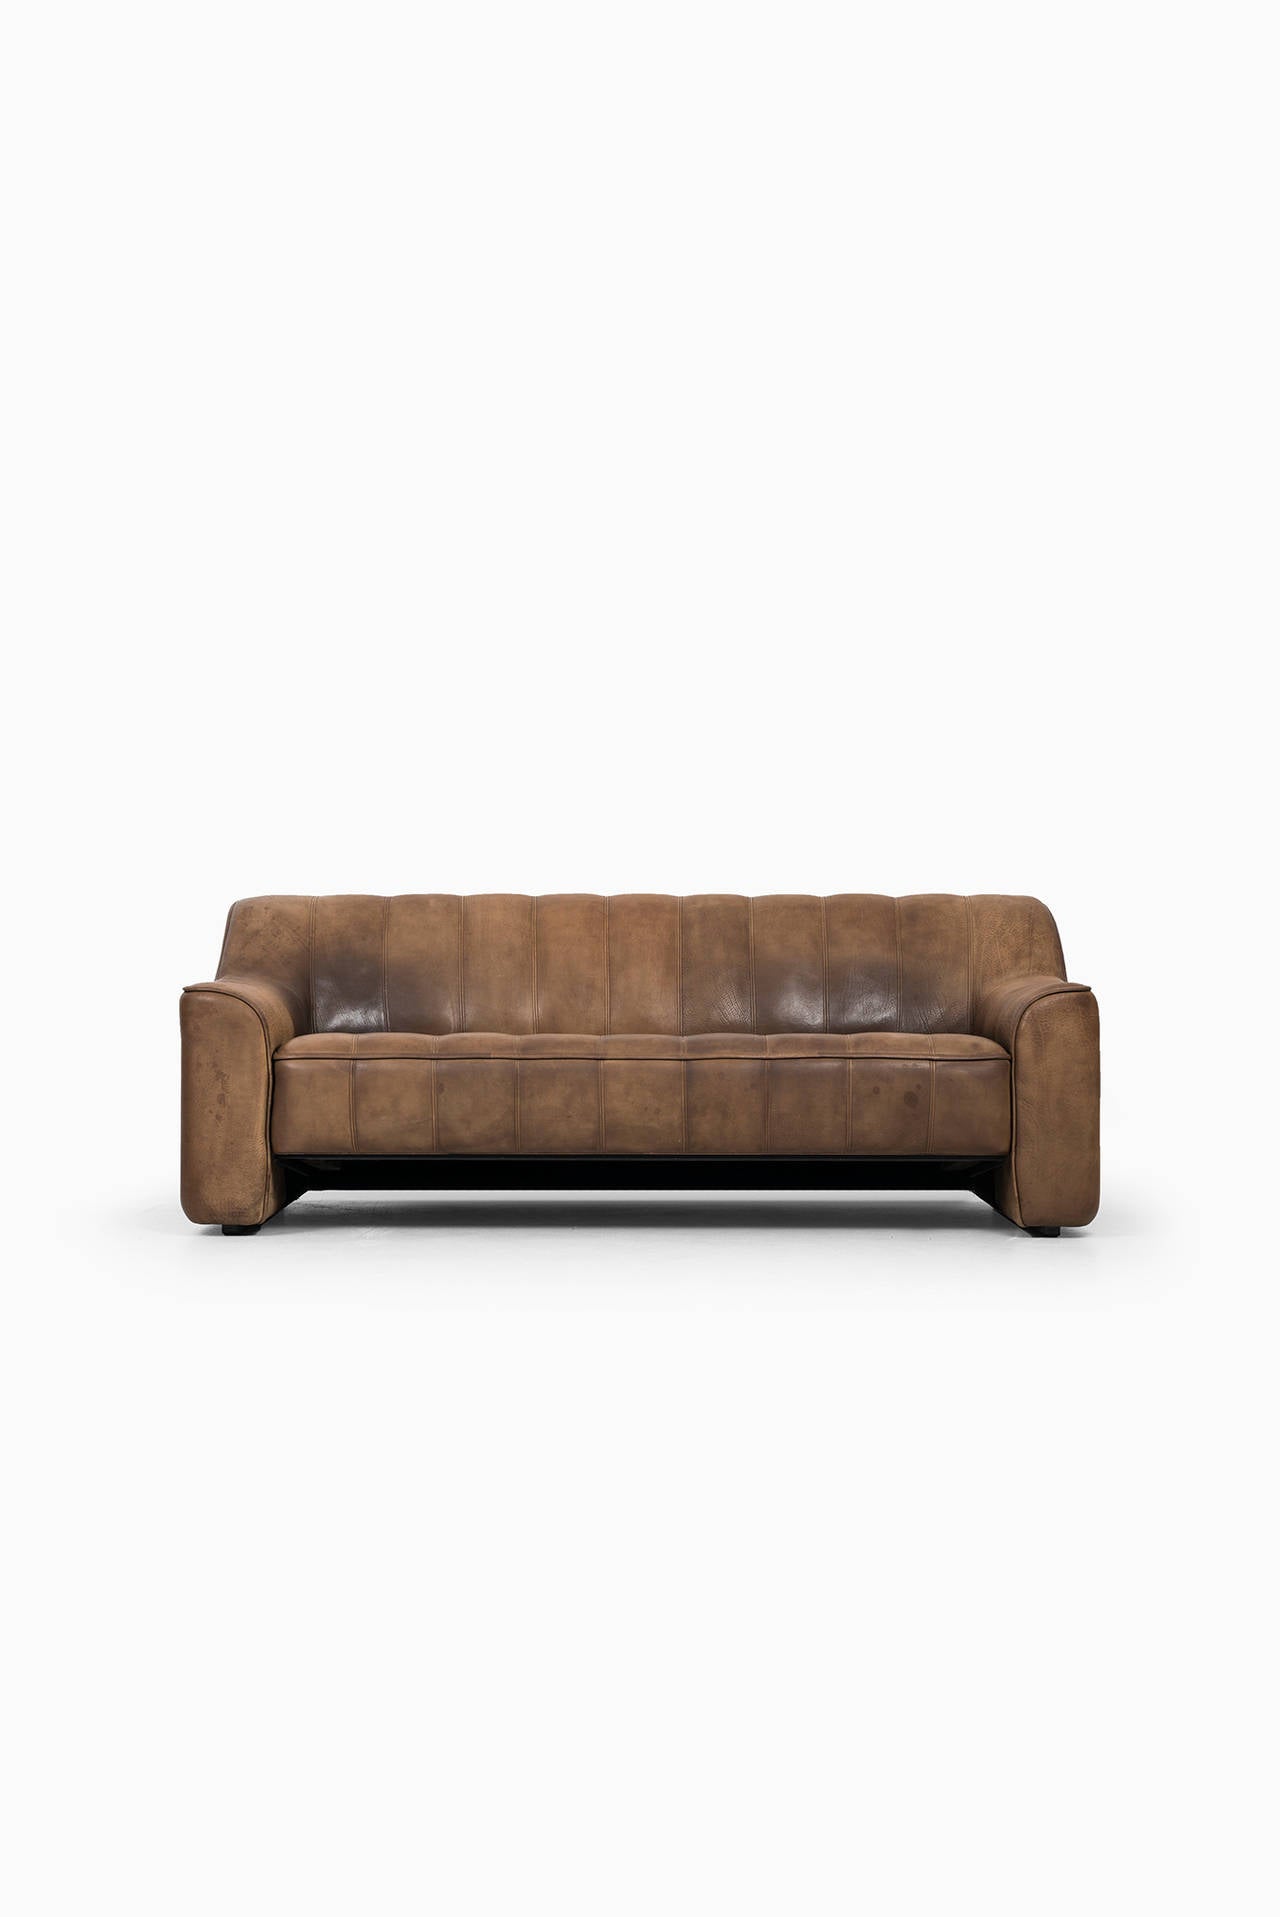 Seltenes Sofa und Sessel Modell DS-44 in dickem Büffelleder mit schöner Patina. Produziert von De Sede in der Schweiz. Zwei verstellbare Sitzpositionen.